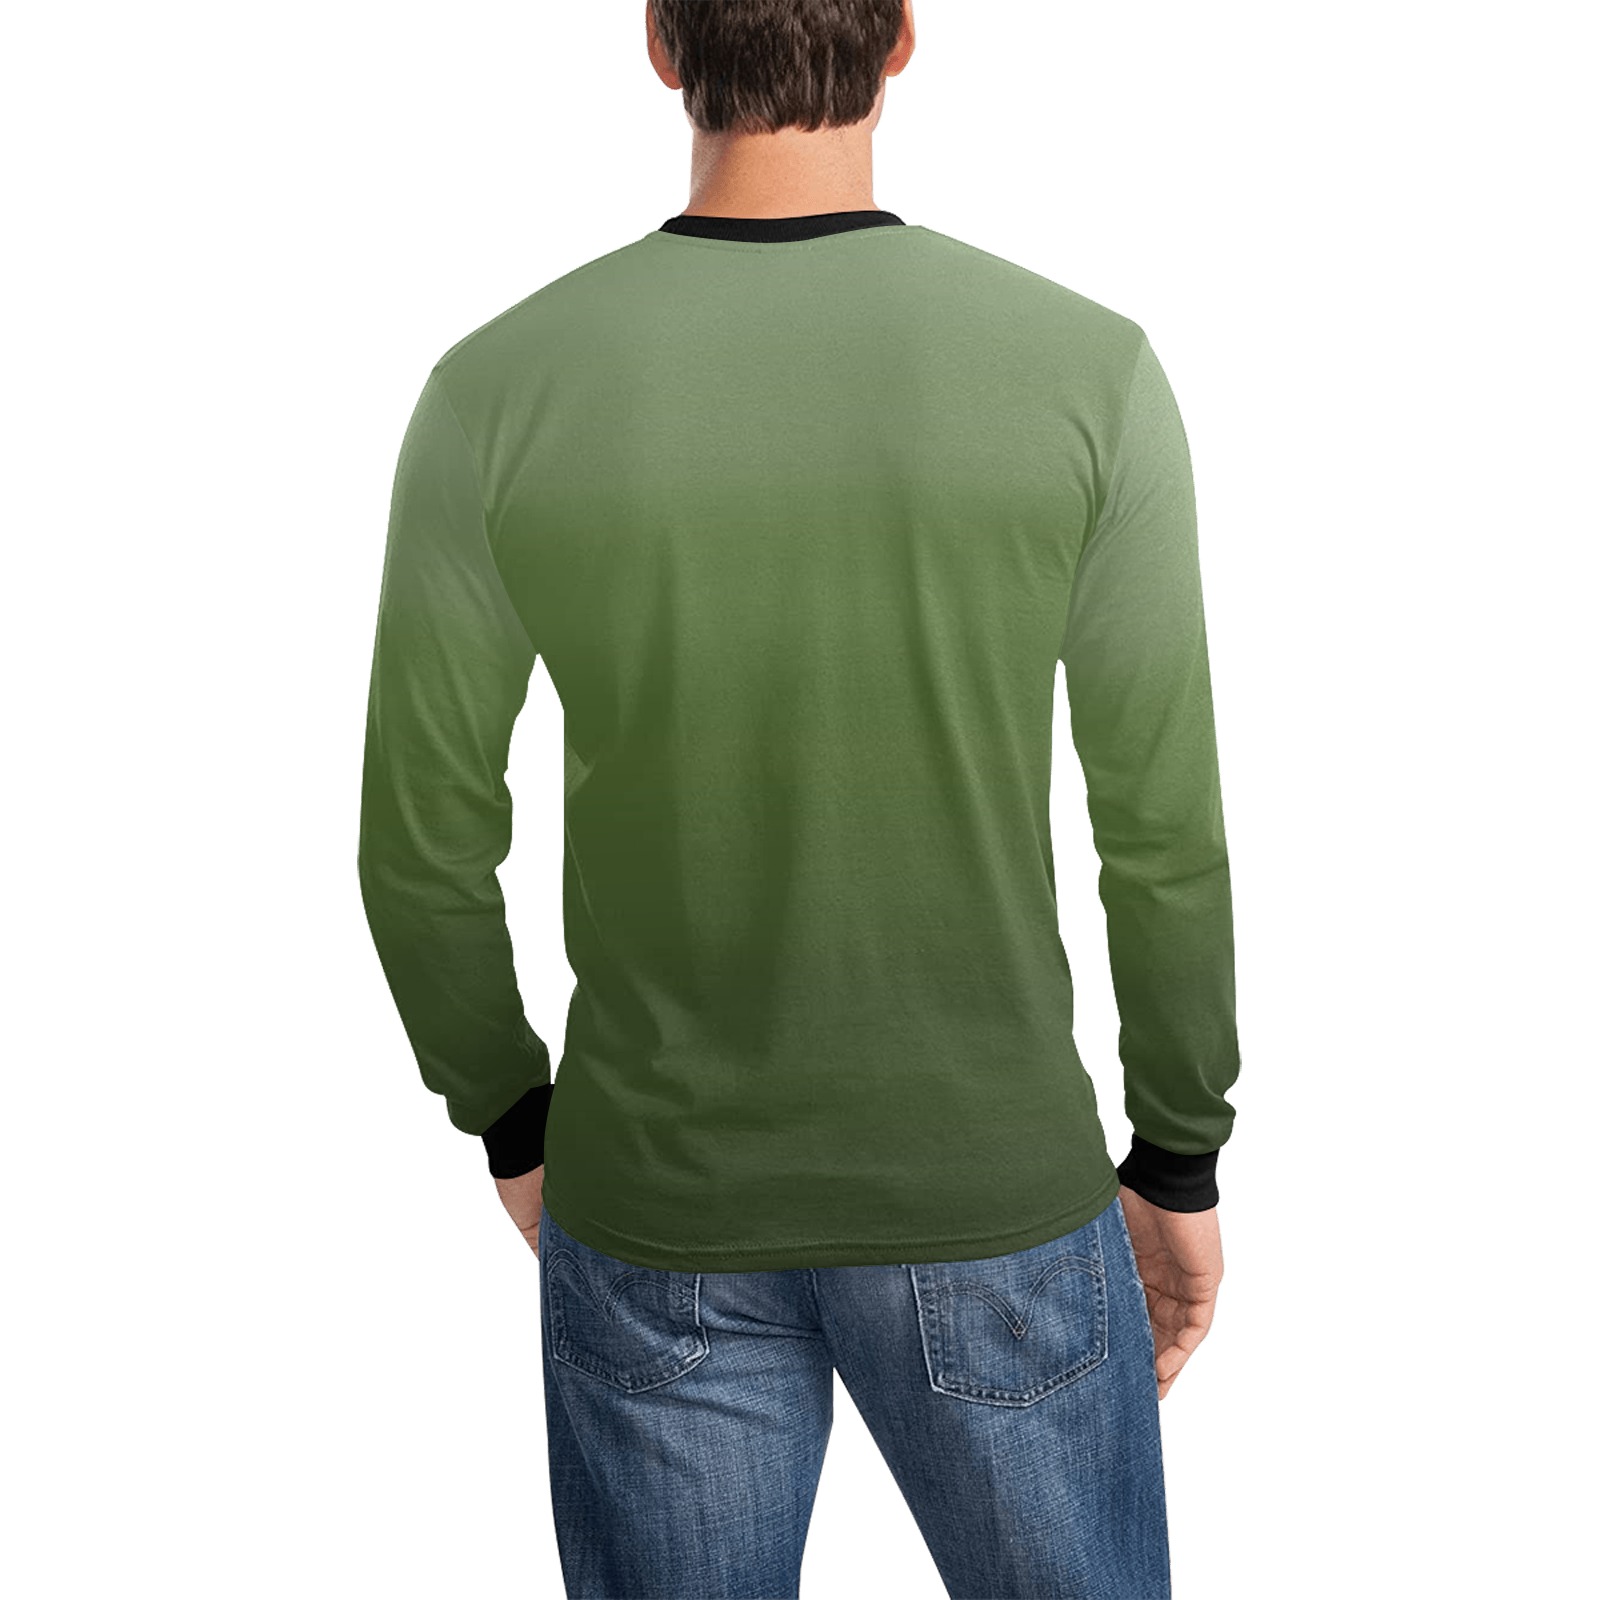 gr sp Men's All Over Print Long Sleeve T-shirt (Model T51)